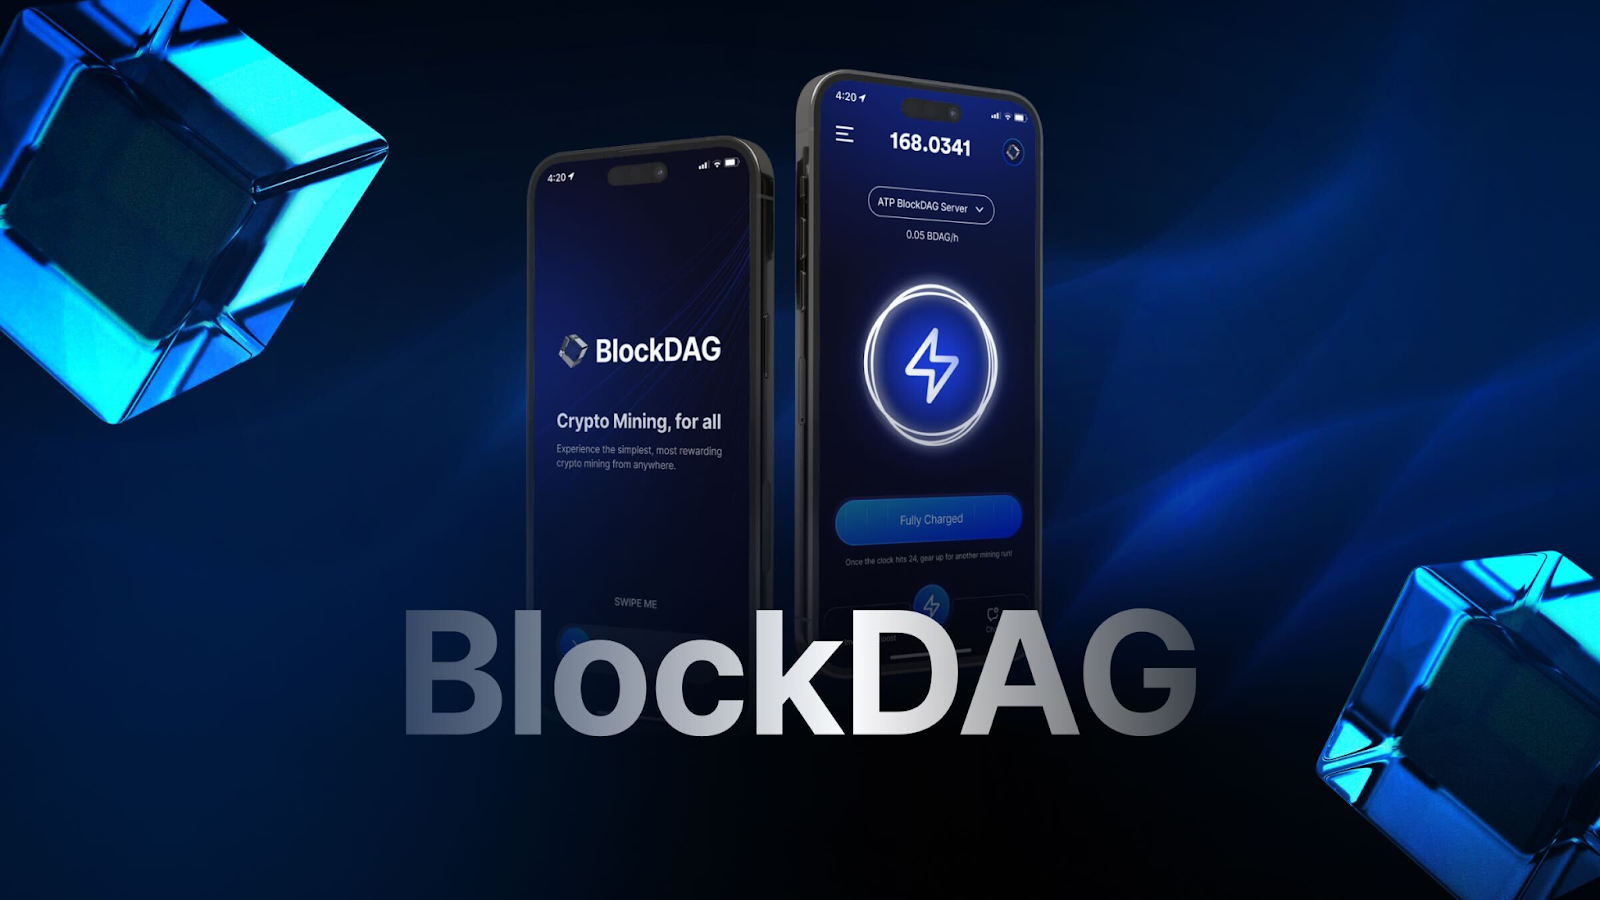 BlockDAG entwickelt sich zum Top-Altcoin mit beispielloser Skalierbarkeit und potenziellem 30.000-fachen ROI